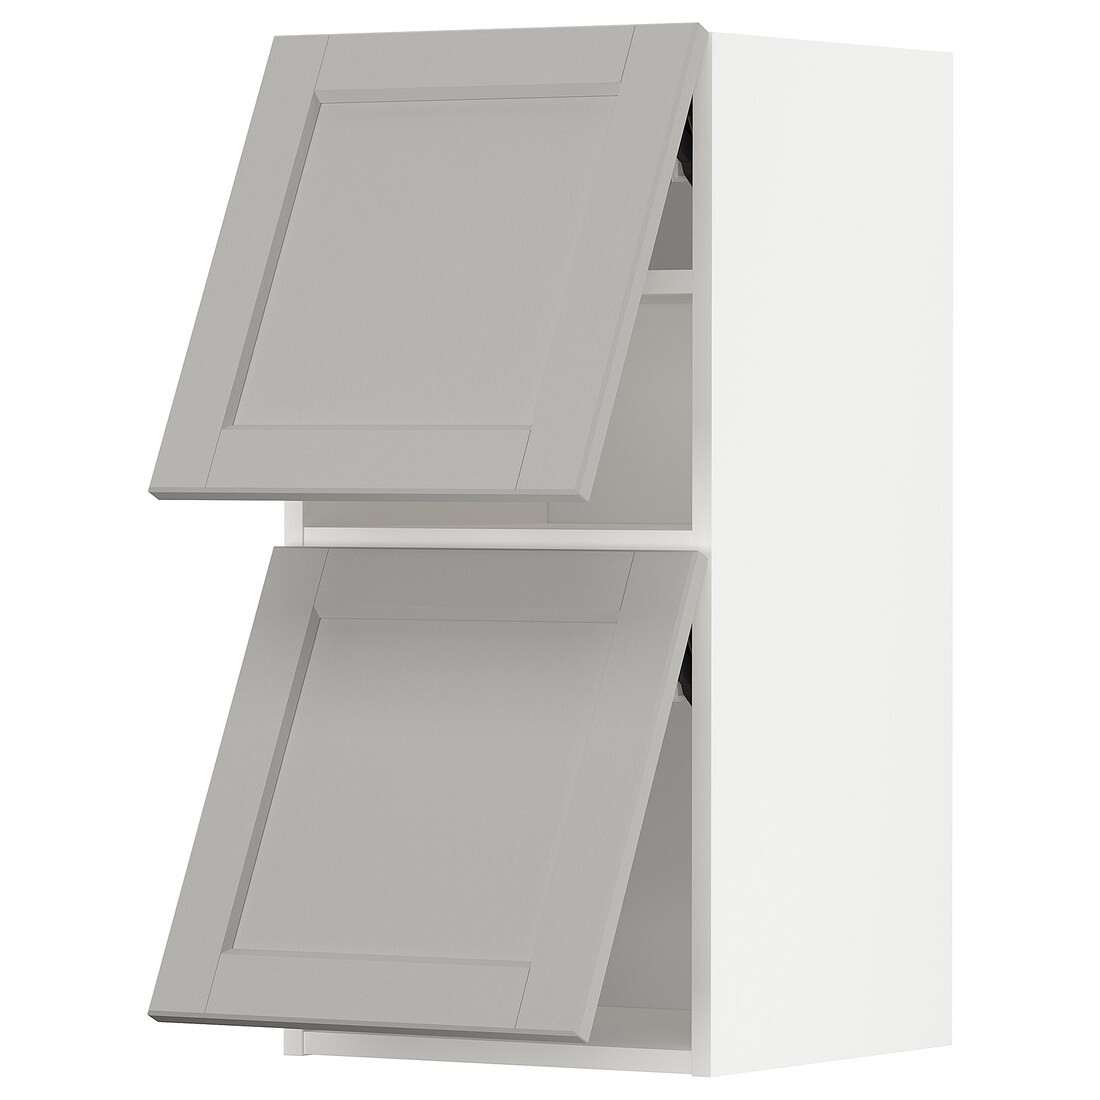 METOD МЕТОД Навесной горизонтальный шкаф / 2 двери, белый / Lerhyttan светло-серый, 40x80 см